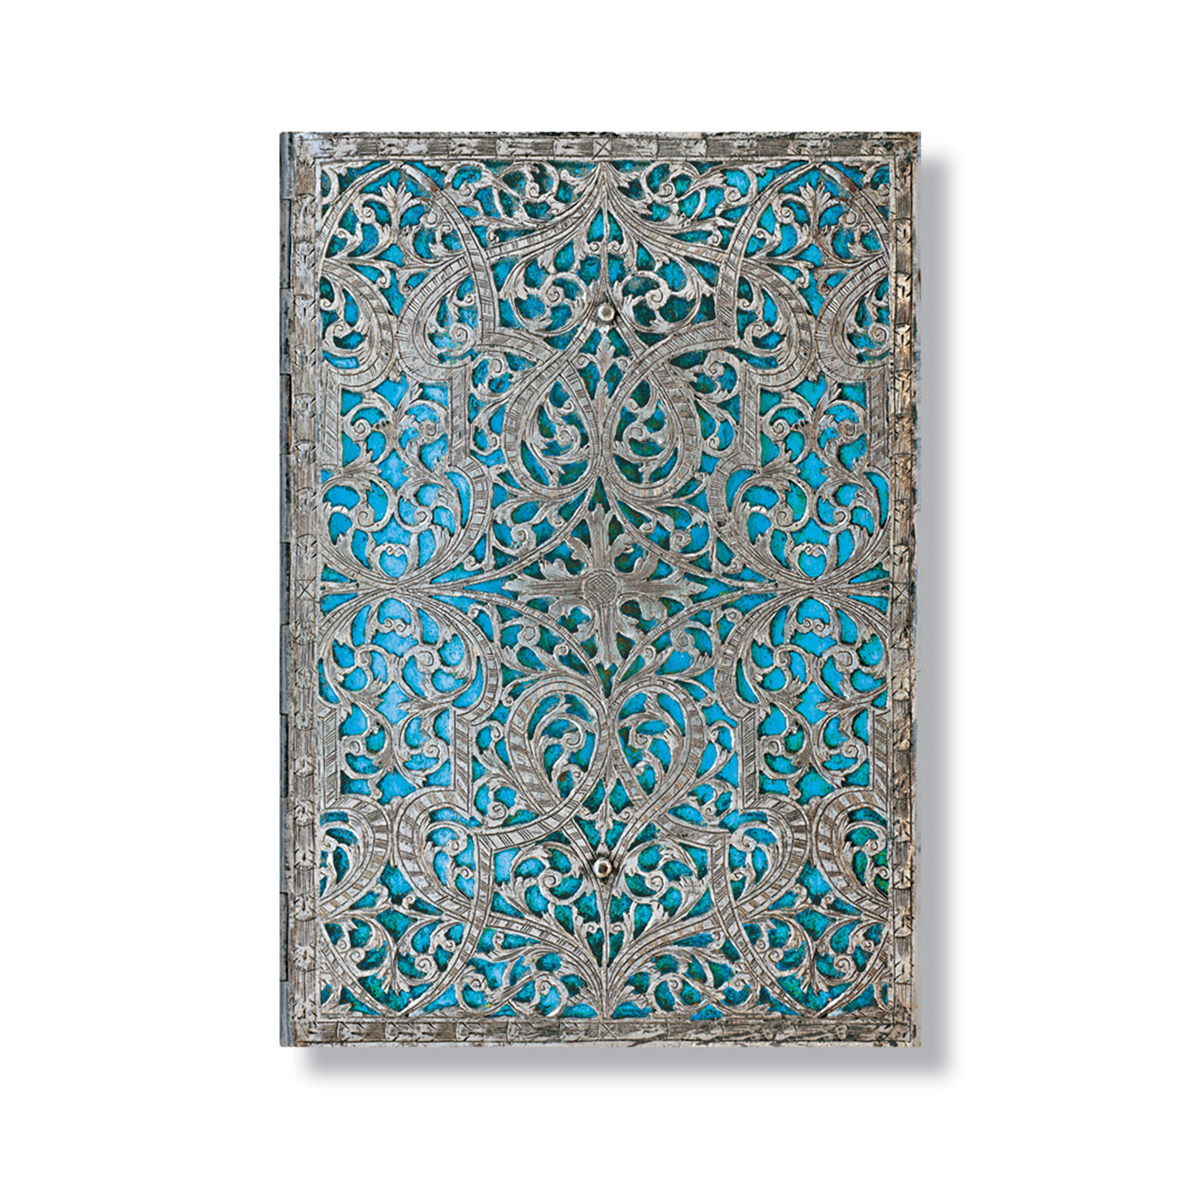 Répertoire - 13 x 18 cm - Filigrane argenté Maya bleu - Paperblanks